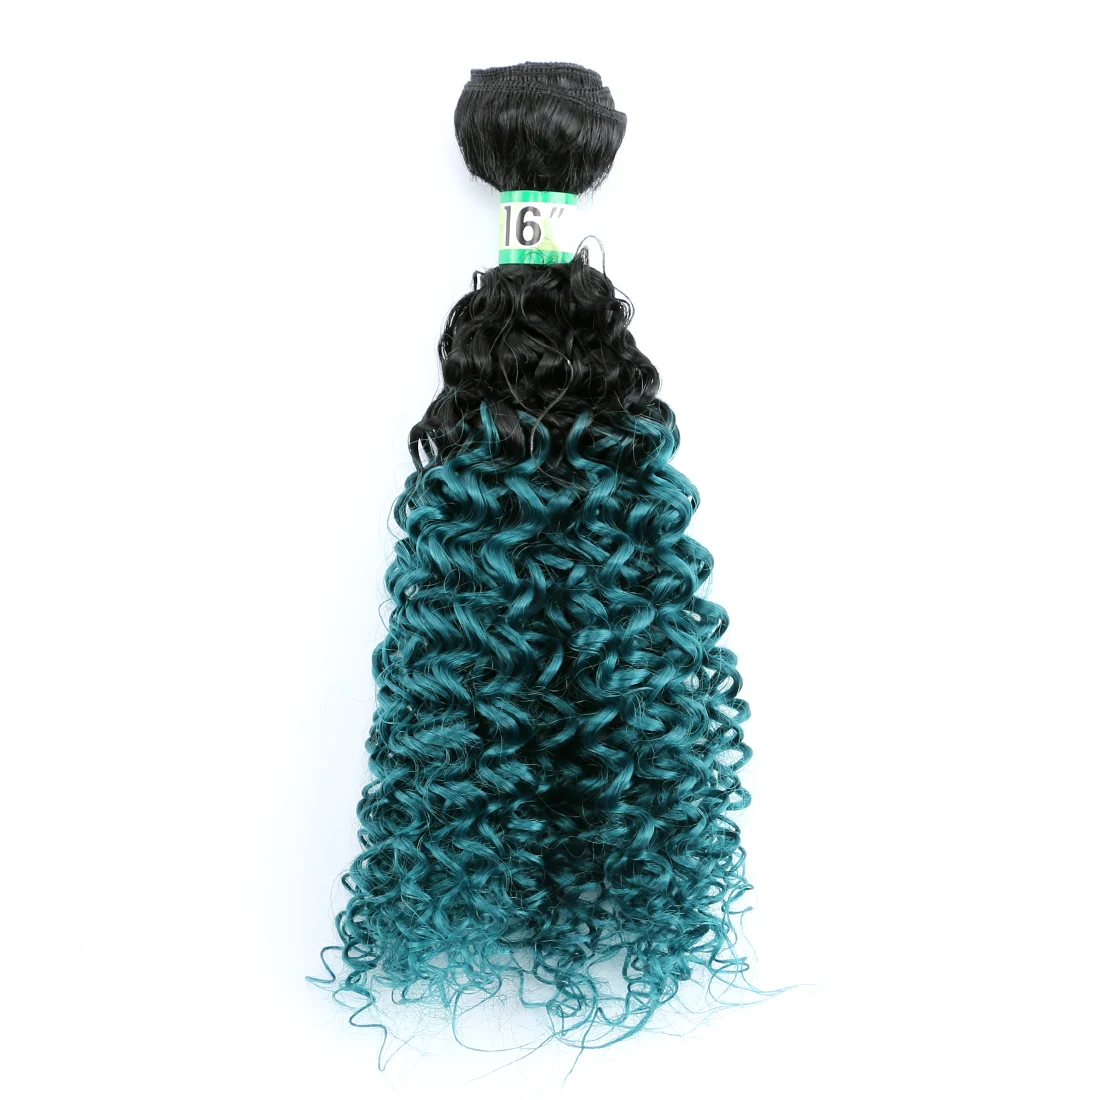 Афро кудрявые вьющиеся волосы черного цвета термостойкие синтетические волосы для наращивания 70 г/шт. пучок волос для женщин